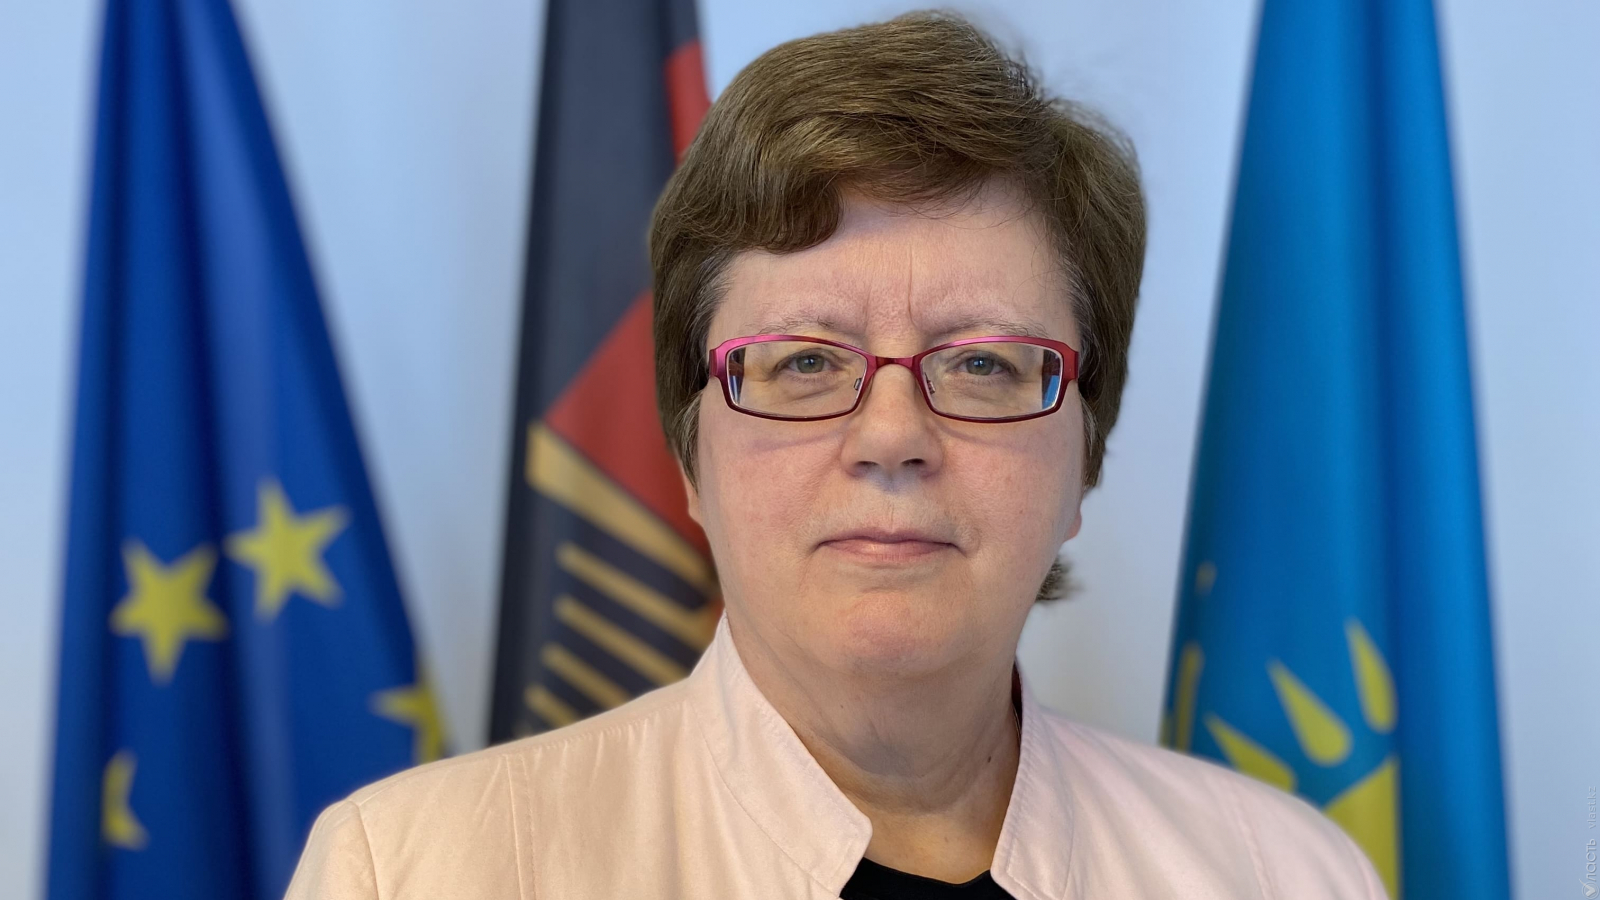 Моника Иверсен, посол Германии: «Надеюсь, в будущем немецких компаний в Центральной Азии станет больше»